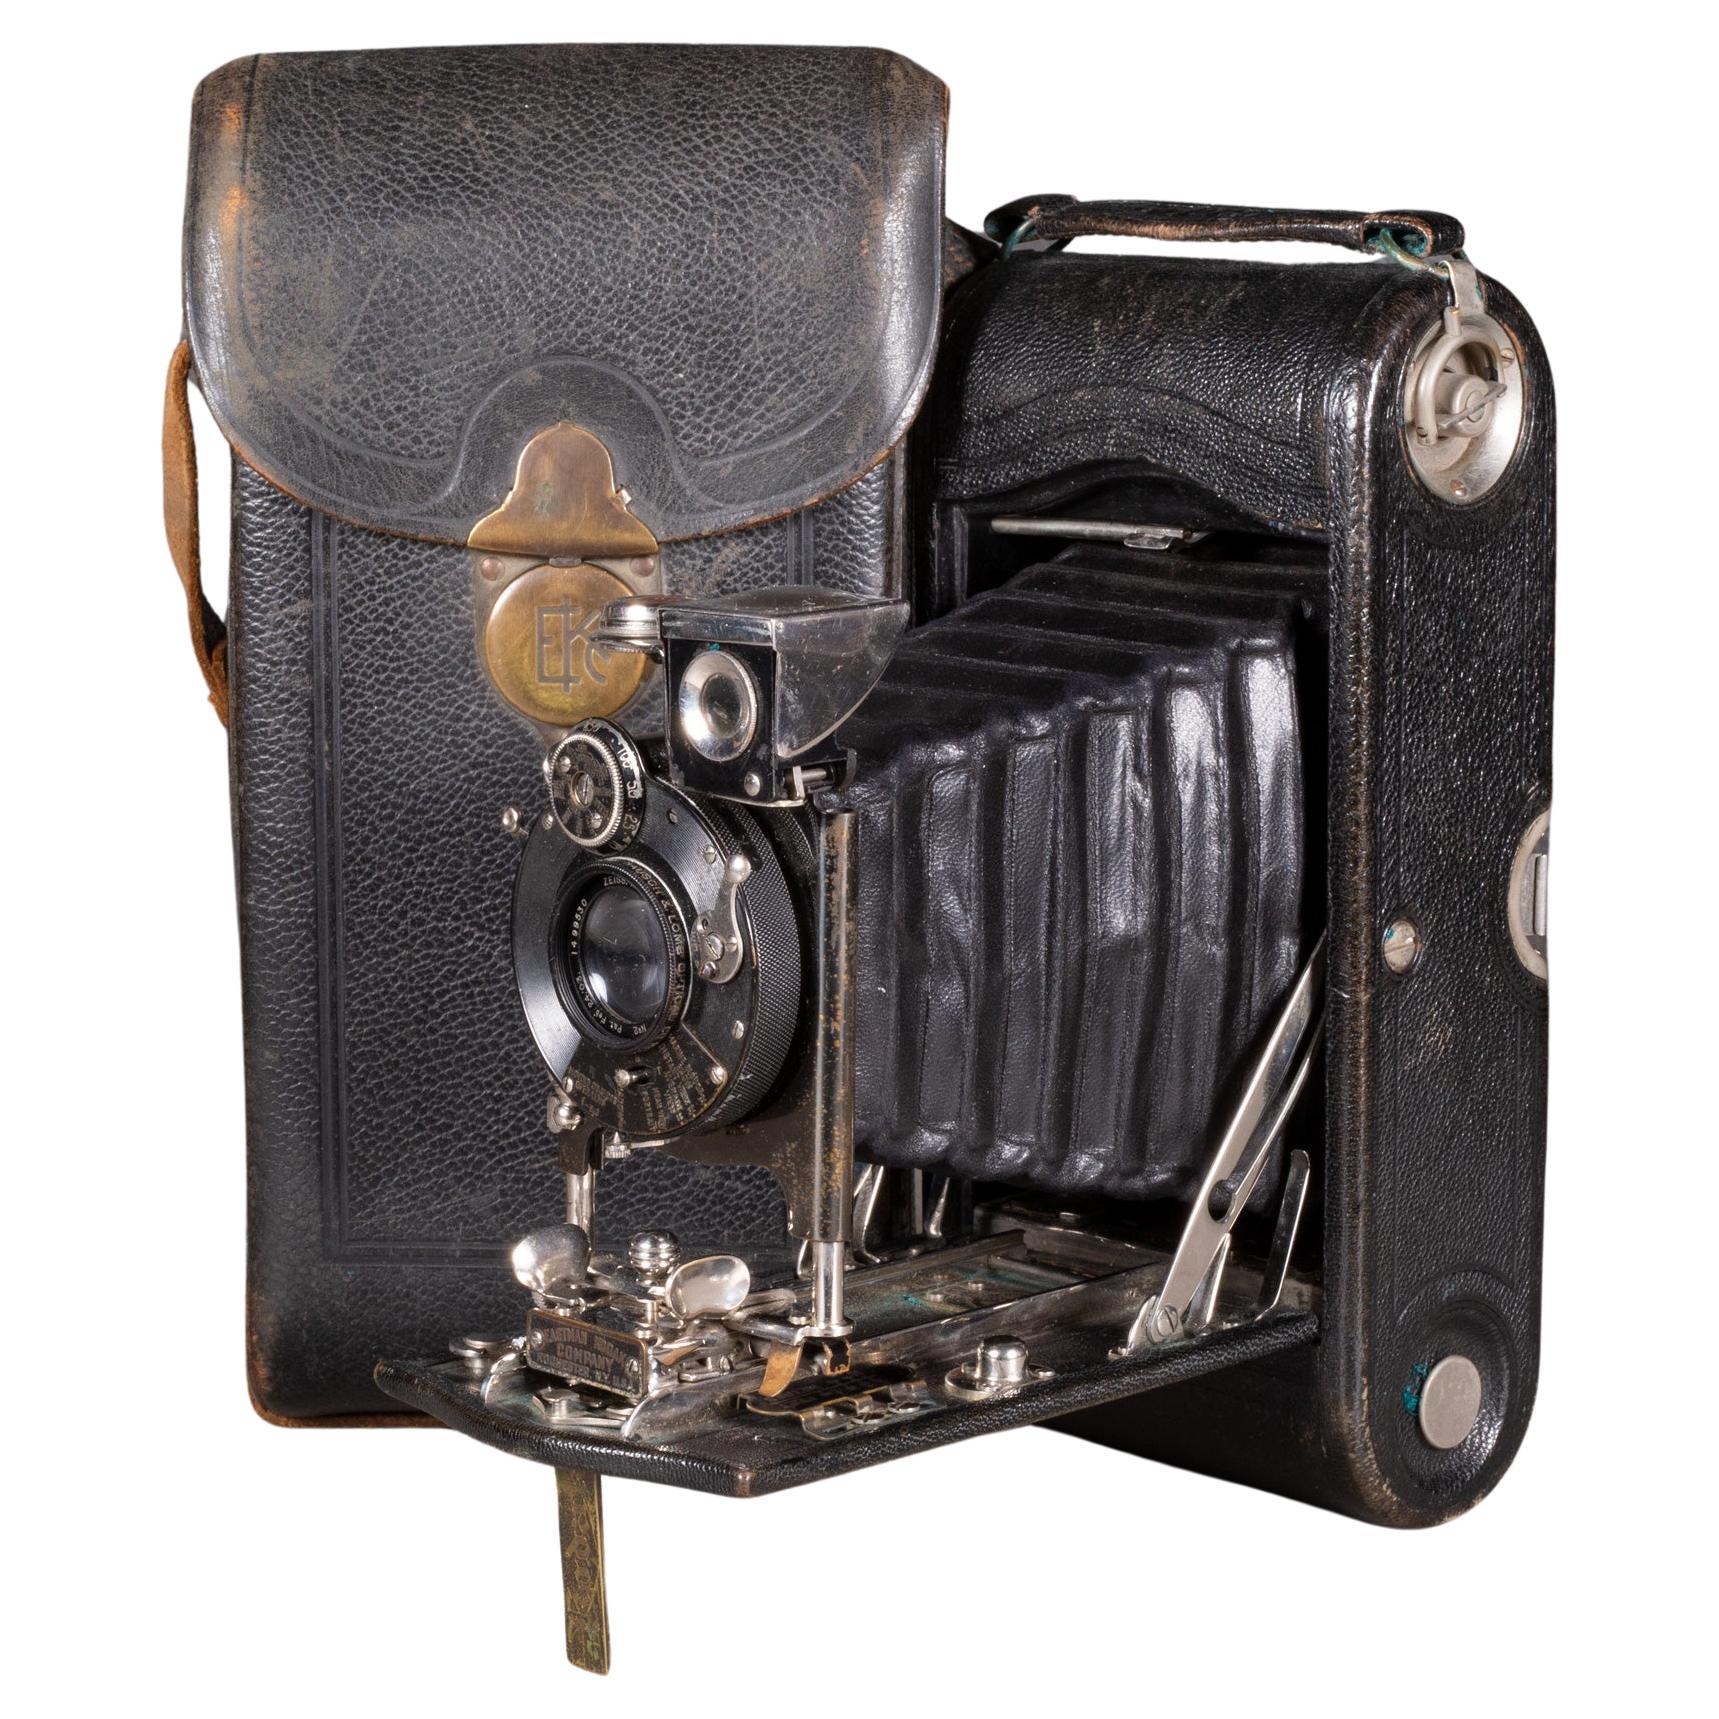 Grande appareil photo Kodak n° 2 pliable avec étui en cuir c.1903 (expédition gratuite)